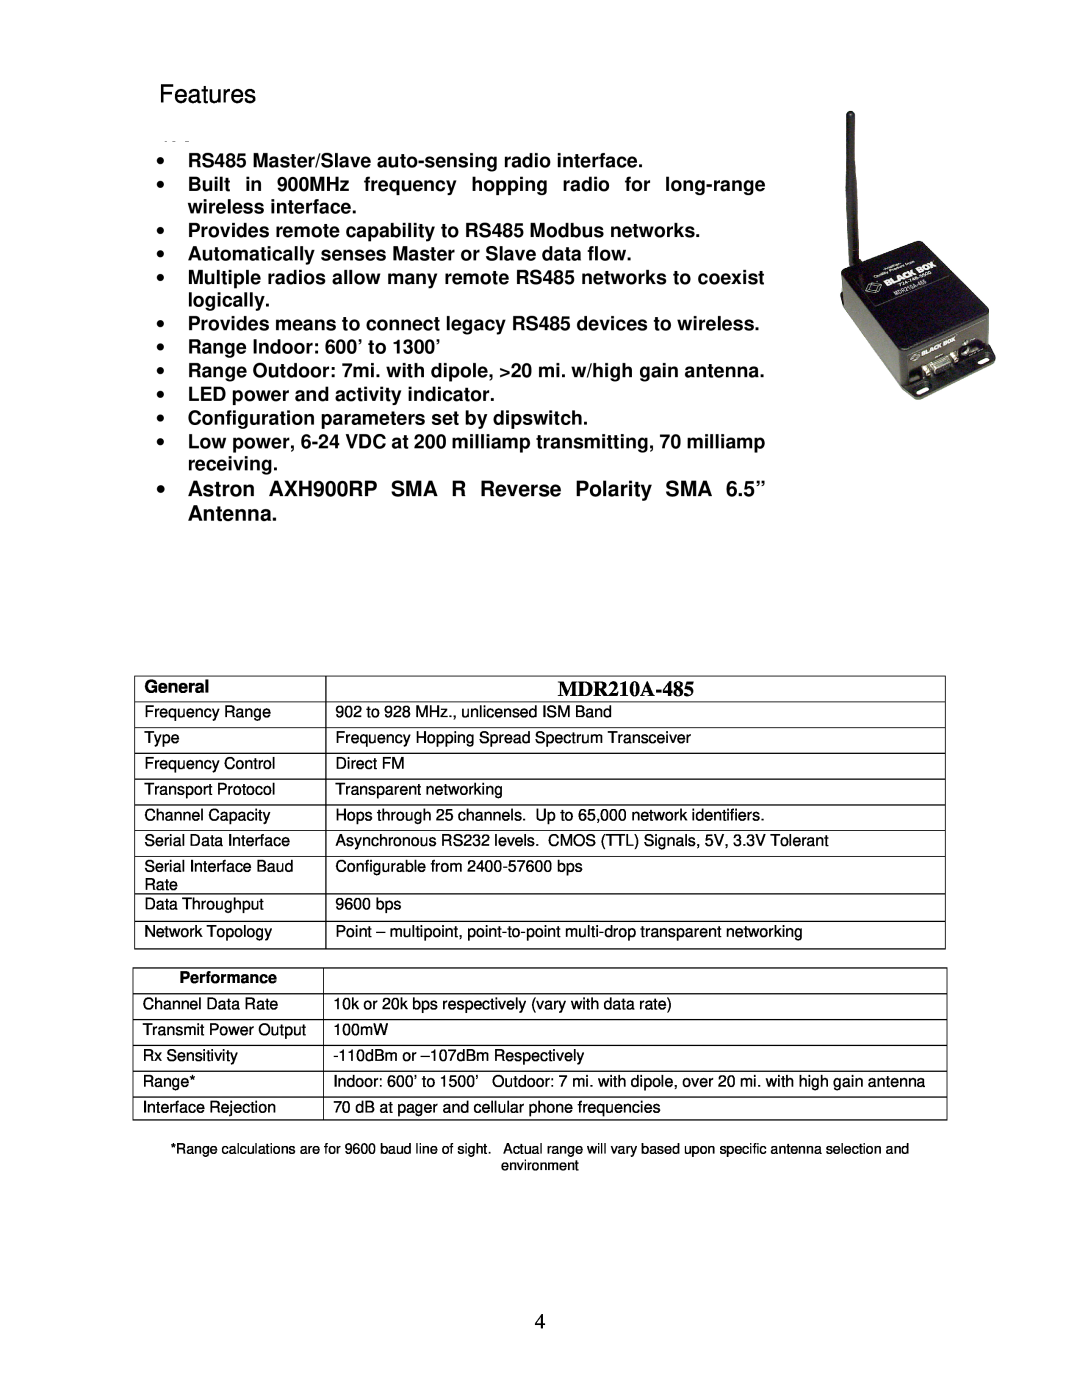 Black Box MDR210A-485 manual Features, ∙ Astron AXH900RP SMA R Reverse Polarity SMA 6.5”, Antenna 